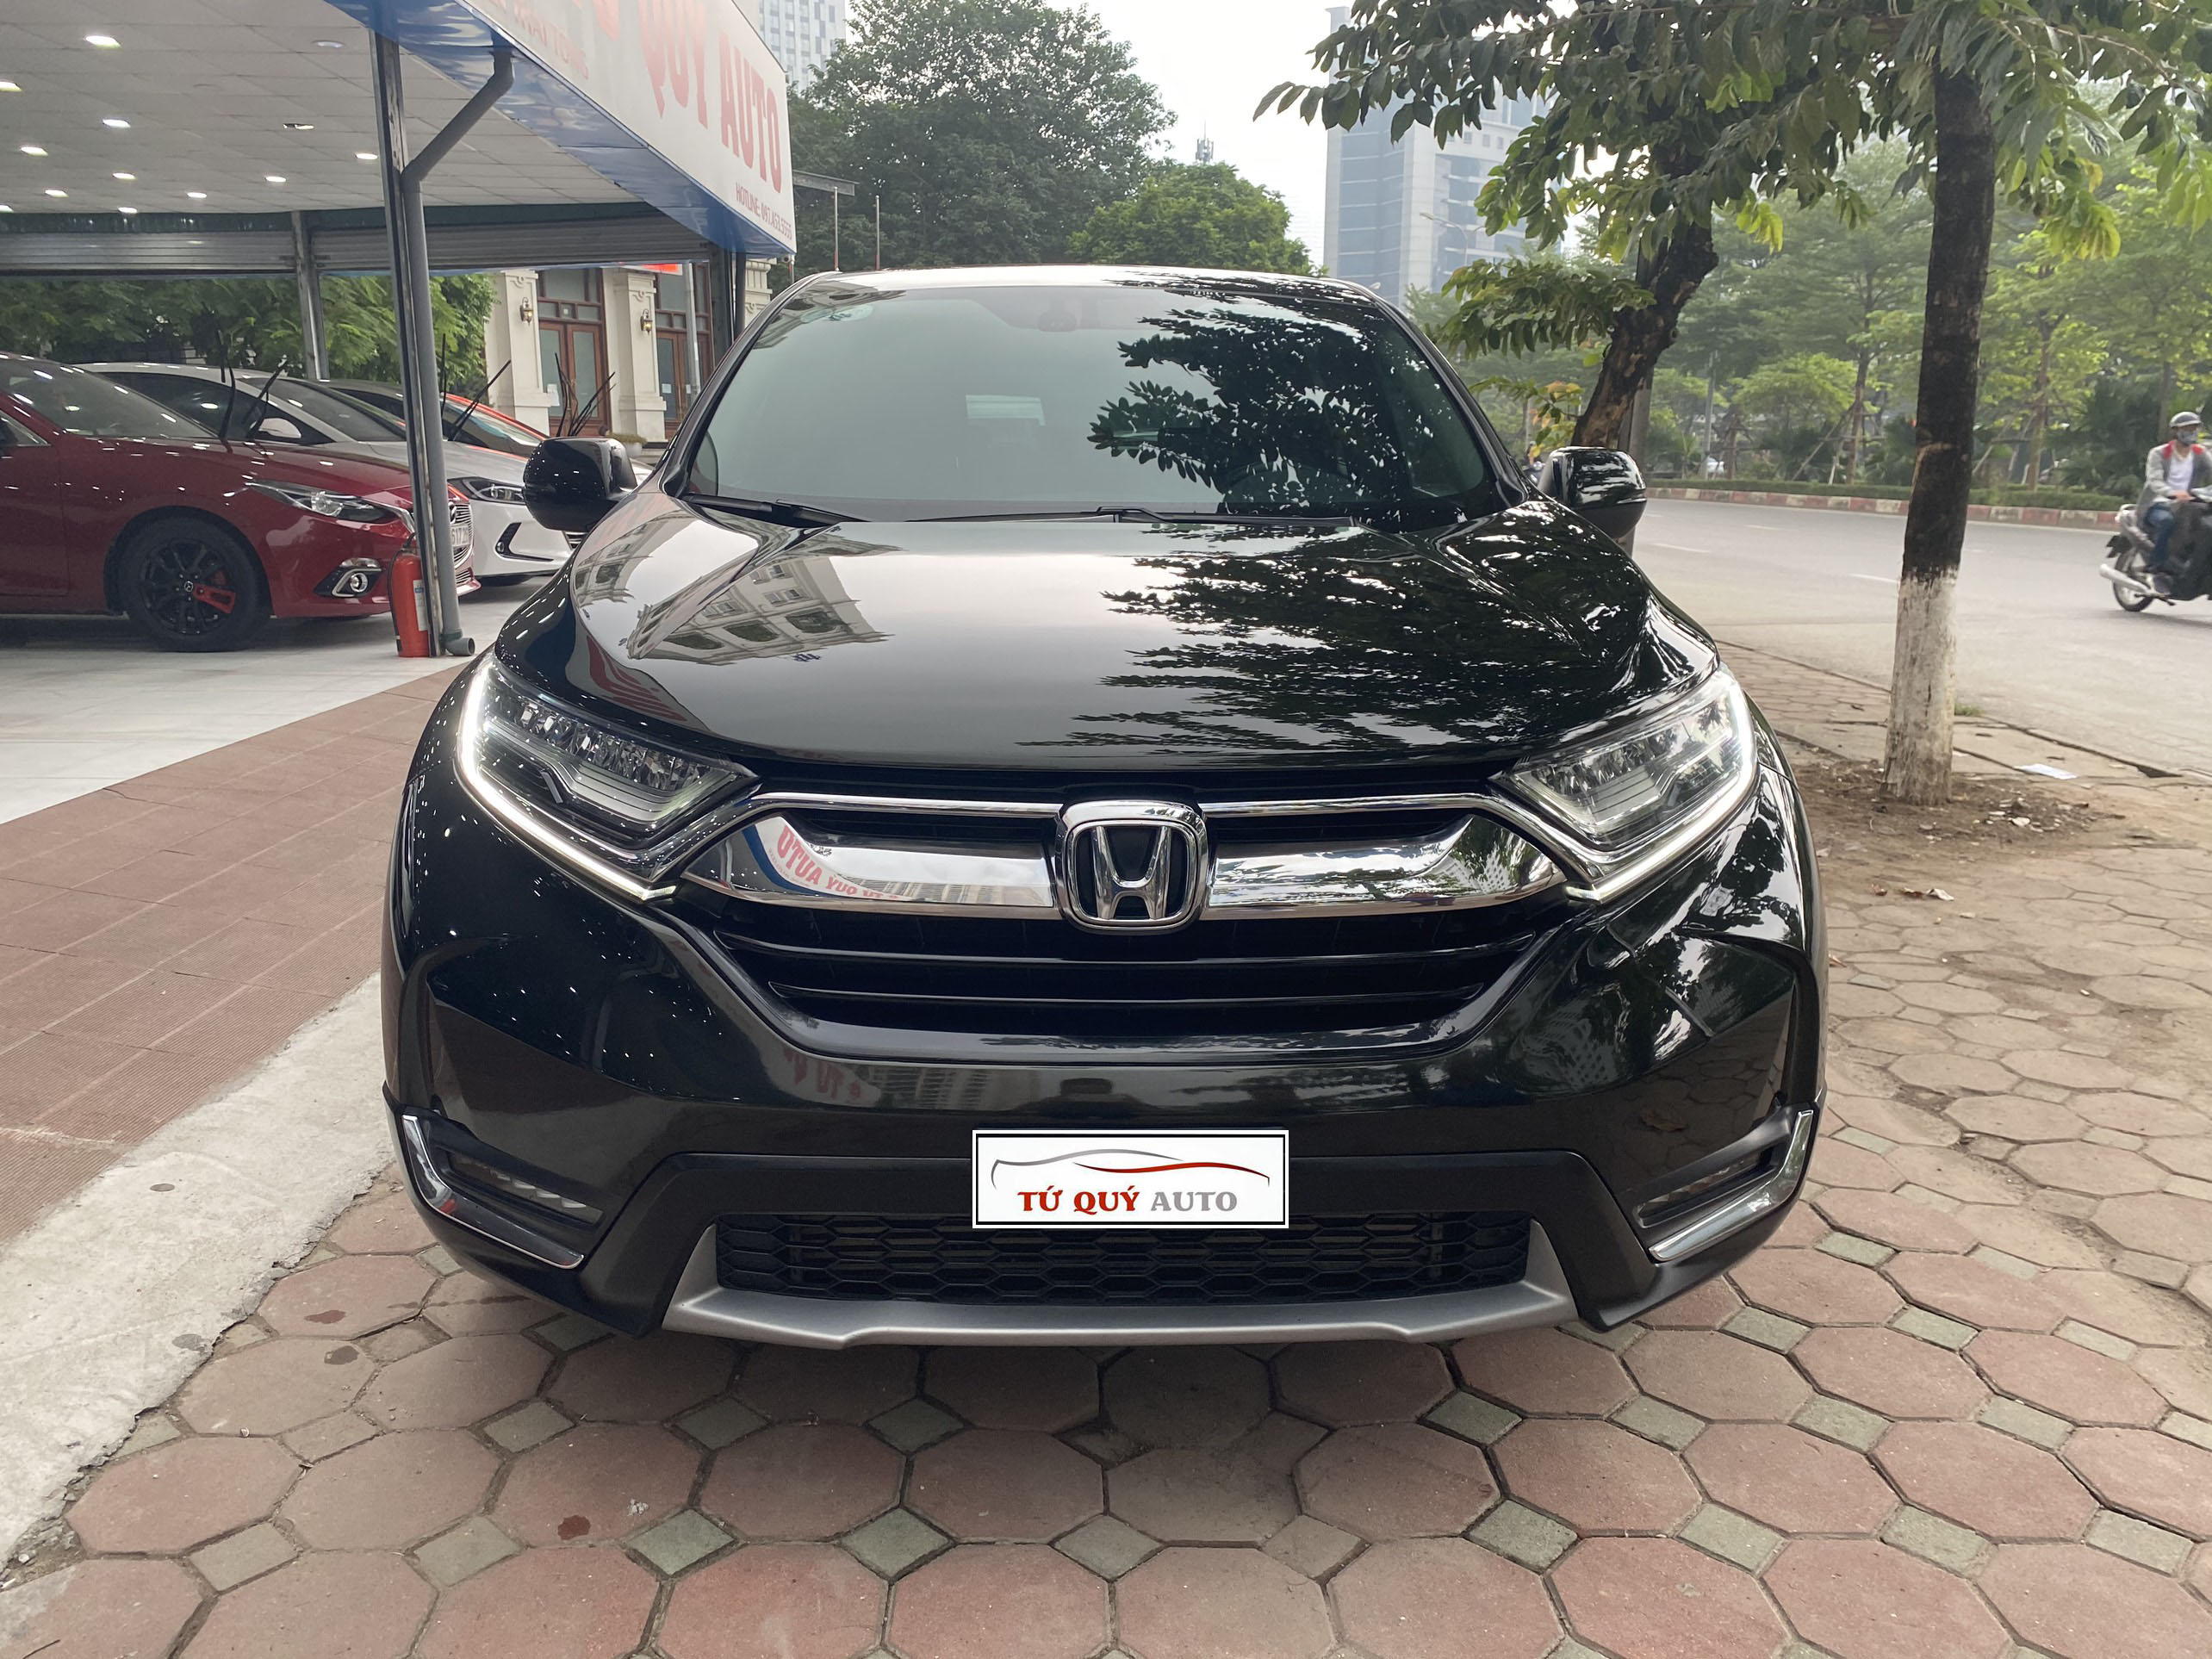 Giá xe Honda CRV 2018 mới nhất tại Việt Nam